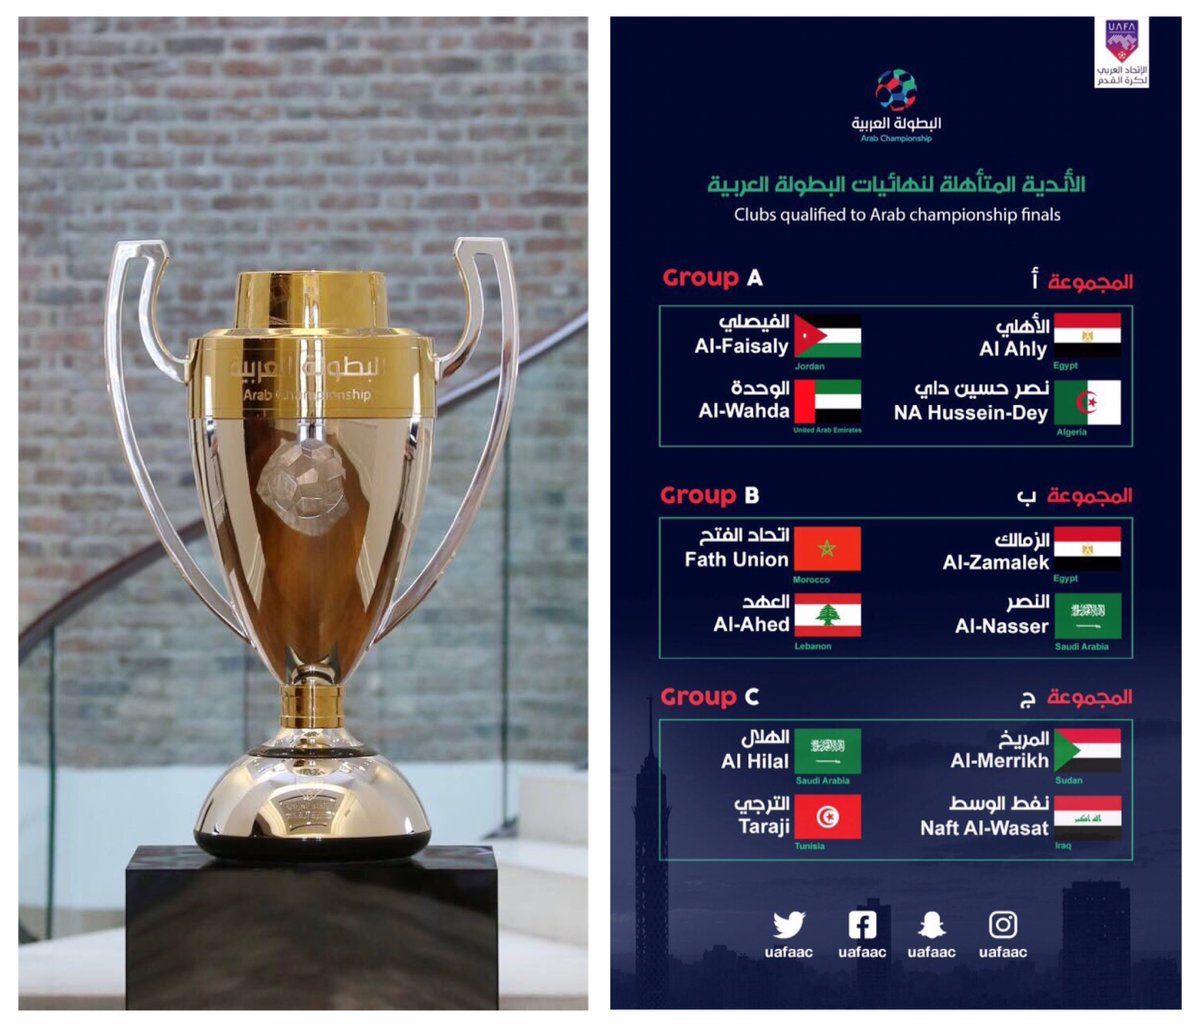 الإعلان عن جدول مباريات الهلال والنصر في البطولة العربية للأندية صحيفة المواطن الإلكترونية